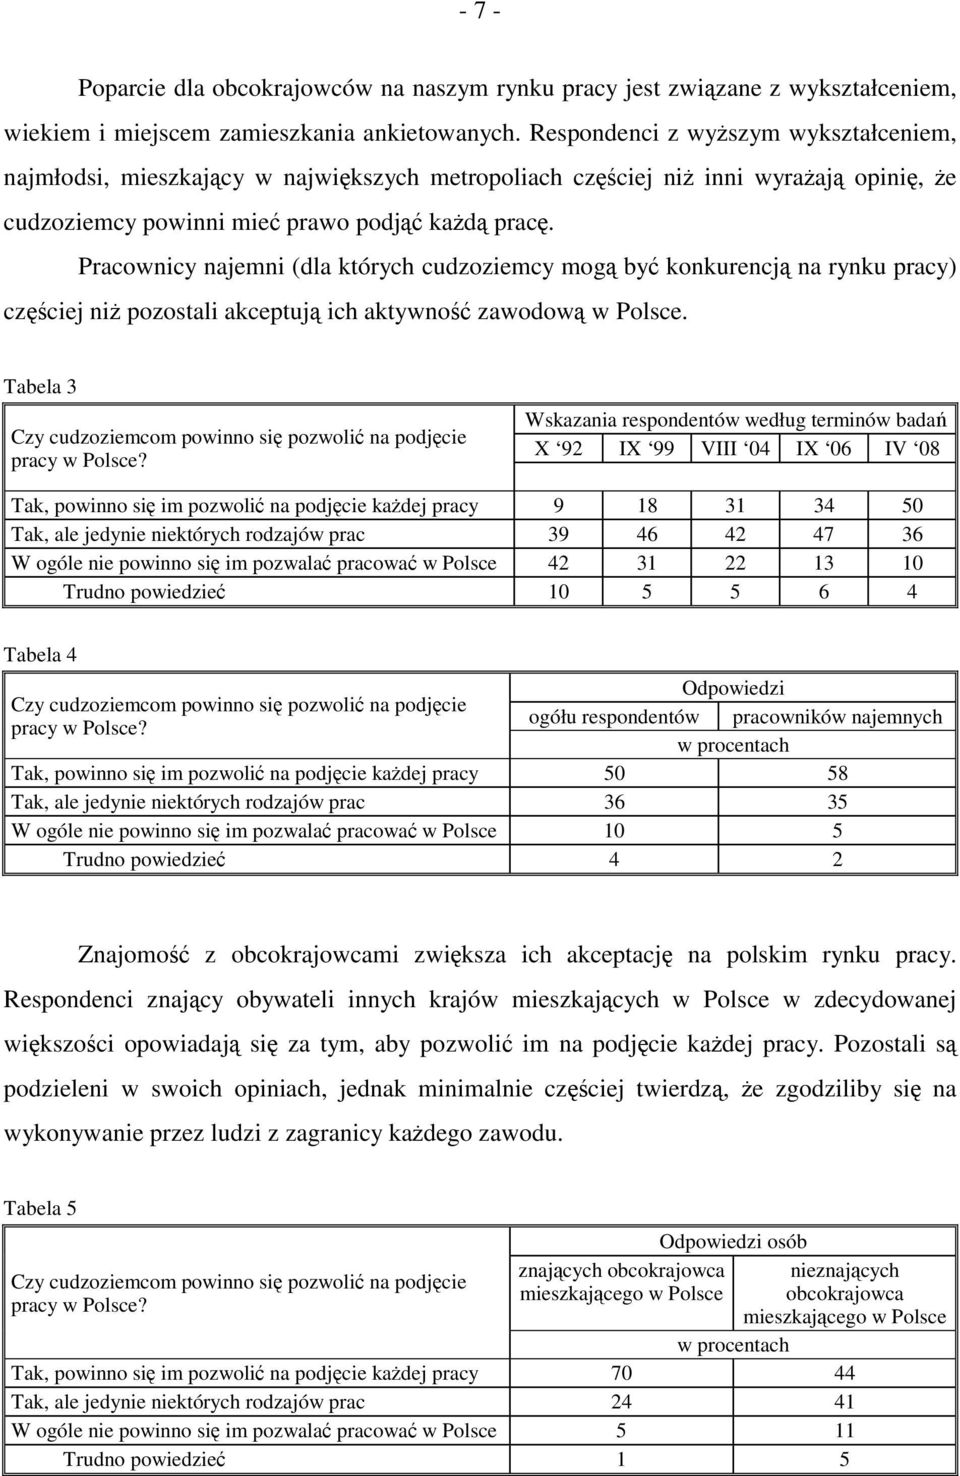 Pracownicy najemni (dla których cudzoziemcy mogą być konkurencją na rynku pracy) częściej niż pozostali akceptują ich aktywność zawodową w Polsce.